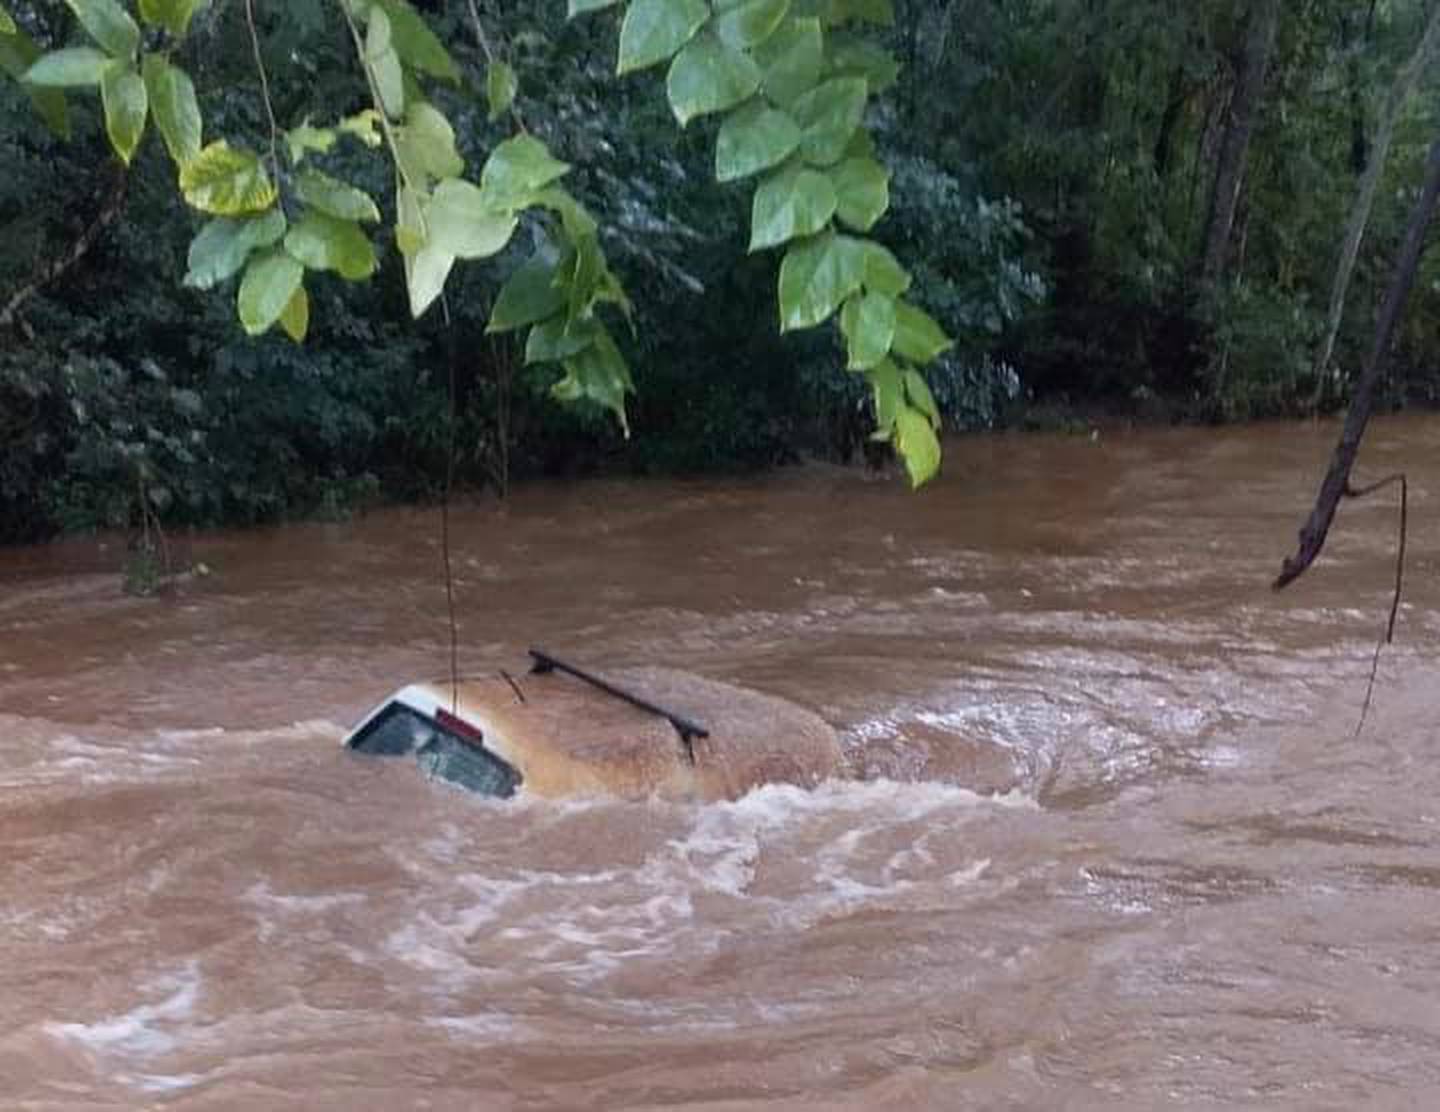 Un carro fue arrastrado por el desbordamiento del río Ostional. No se reportaron personas afectadas. Foto: Cortesía Guana/Noticias.